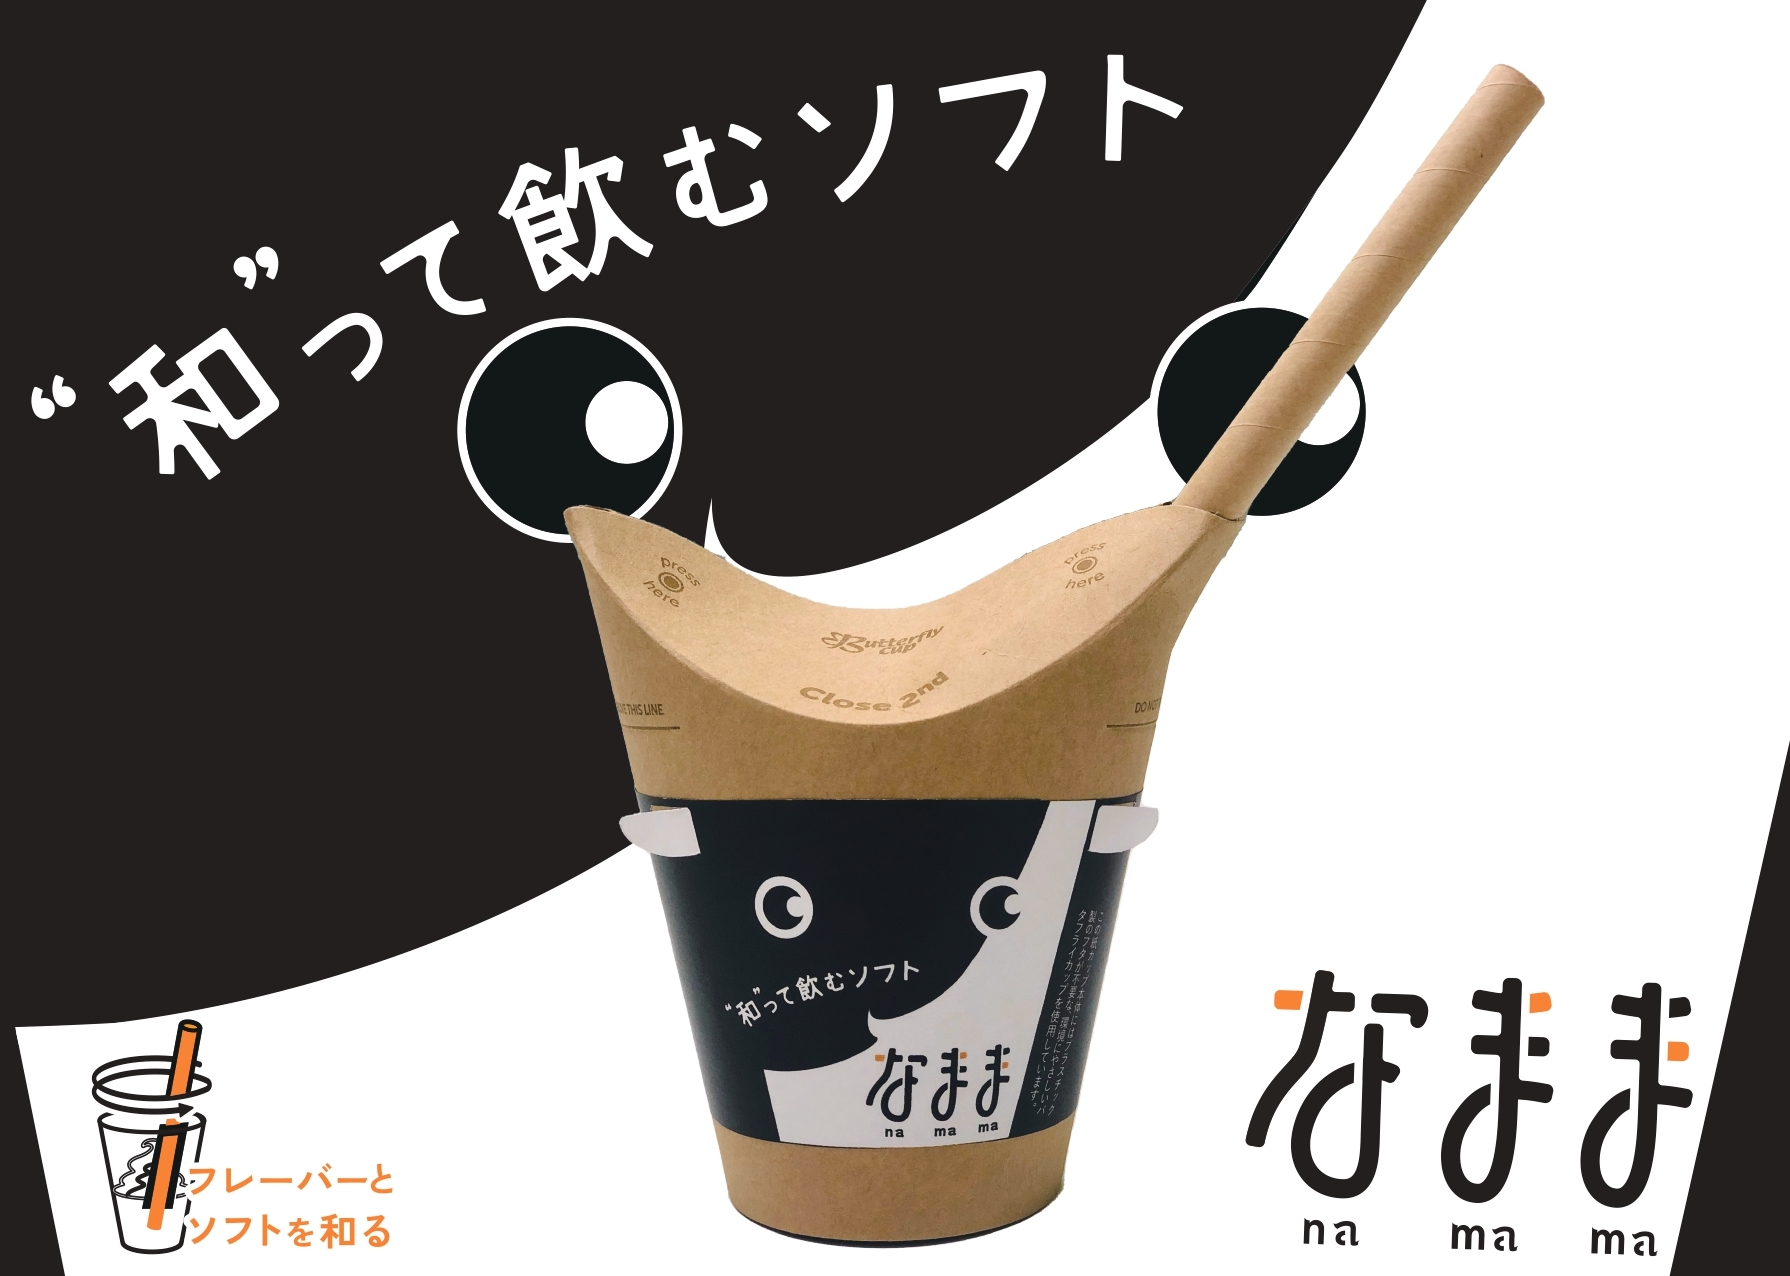 北海道どさんこプラザ「“和”って飲むソフトなまま」発売！
年間10万本以上売れるソフトクリームをドリンクに改良し8月登場